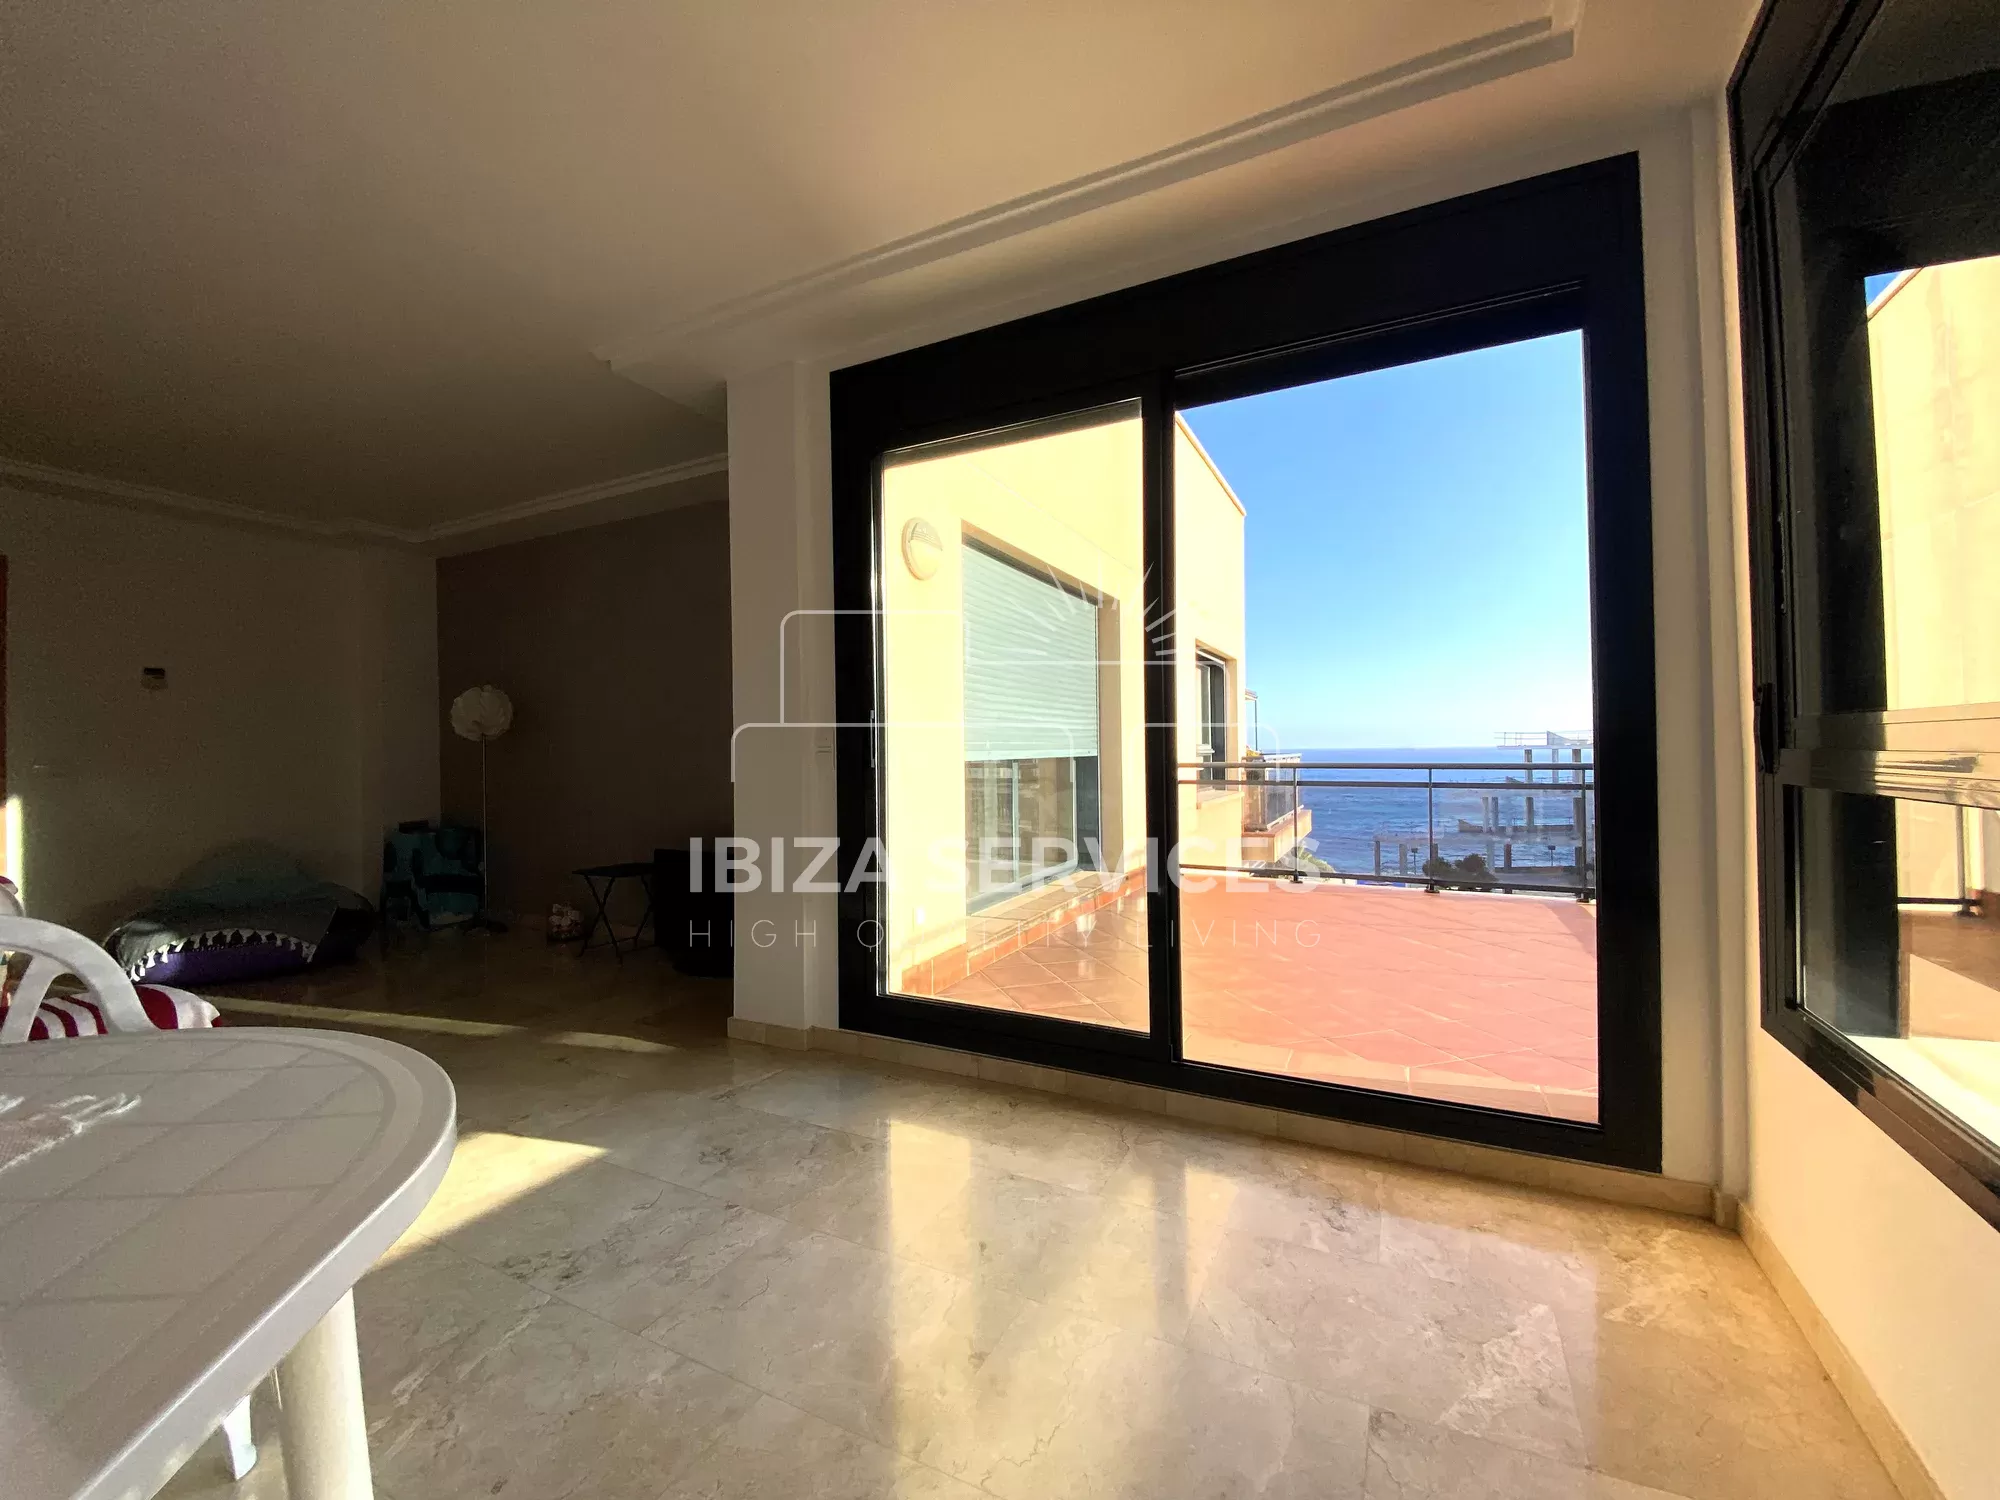 Kaufen Sie ein Penthouse in der Nähe von Playa d’en Bossa mit Meerblick